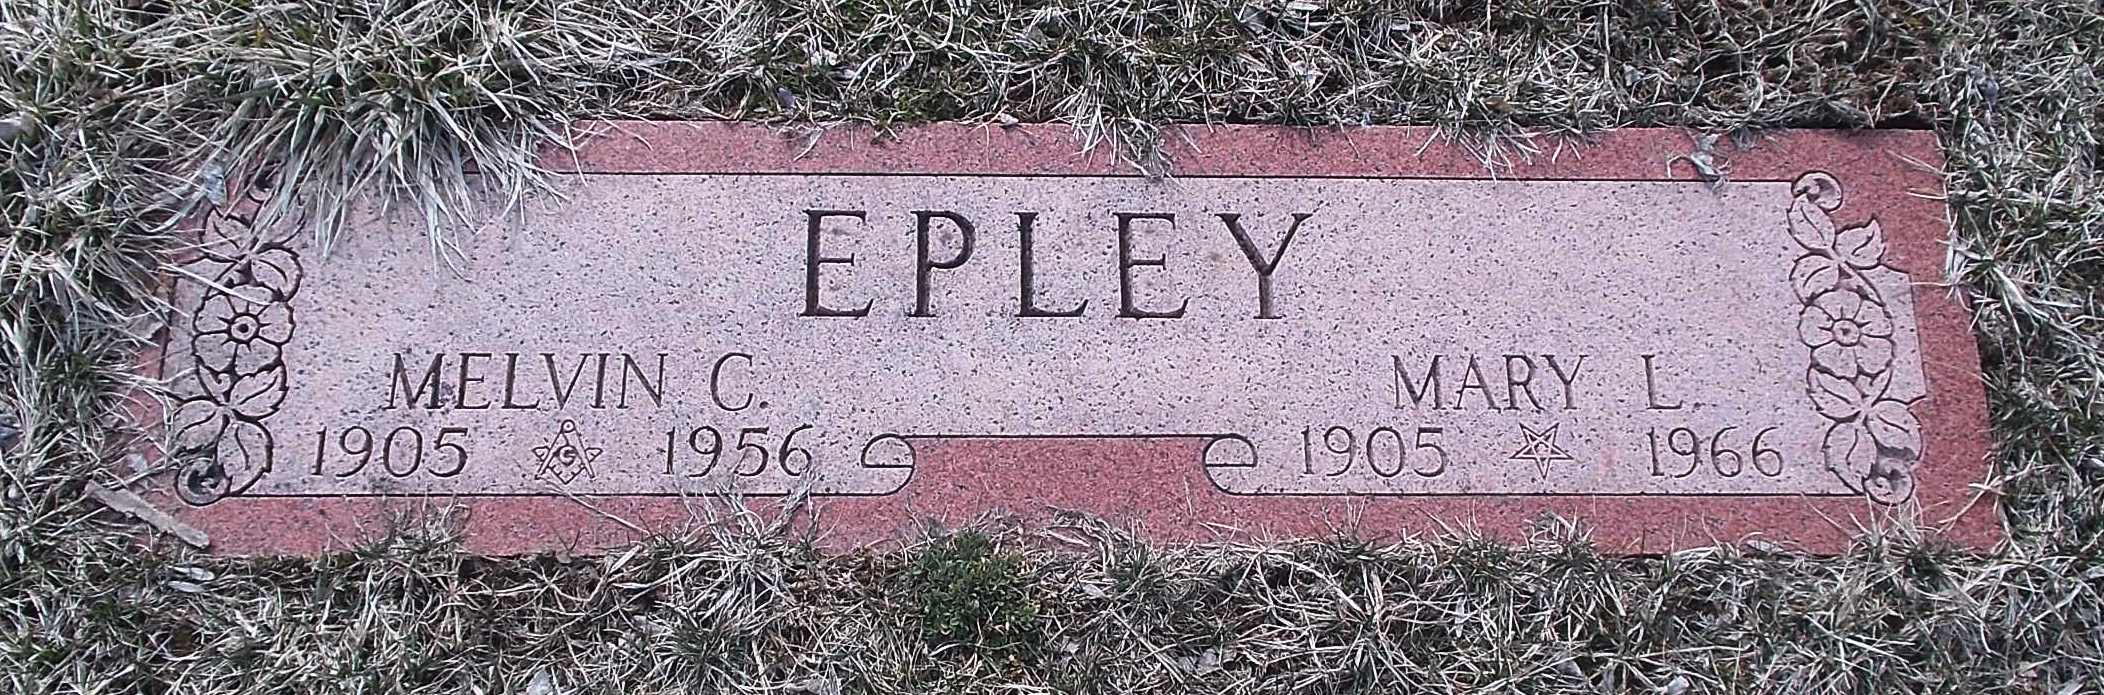 Mary L Epley